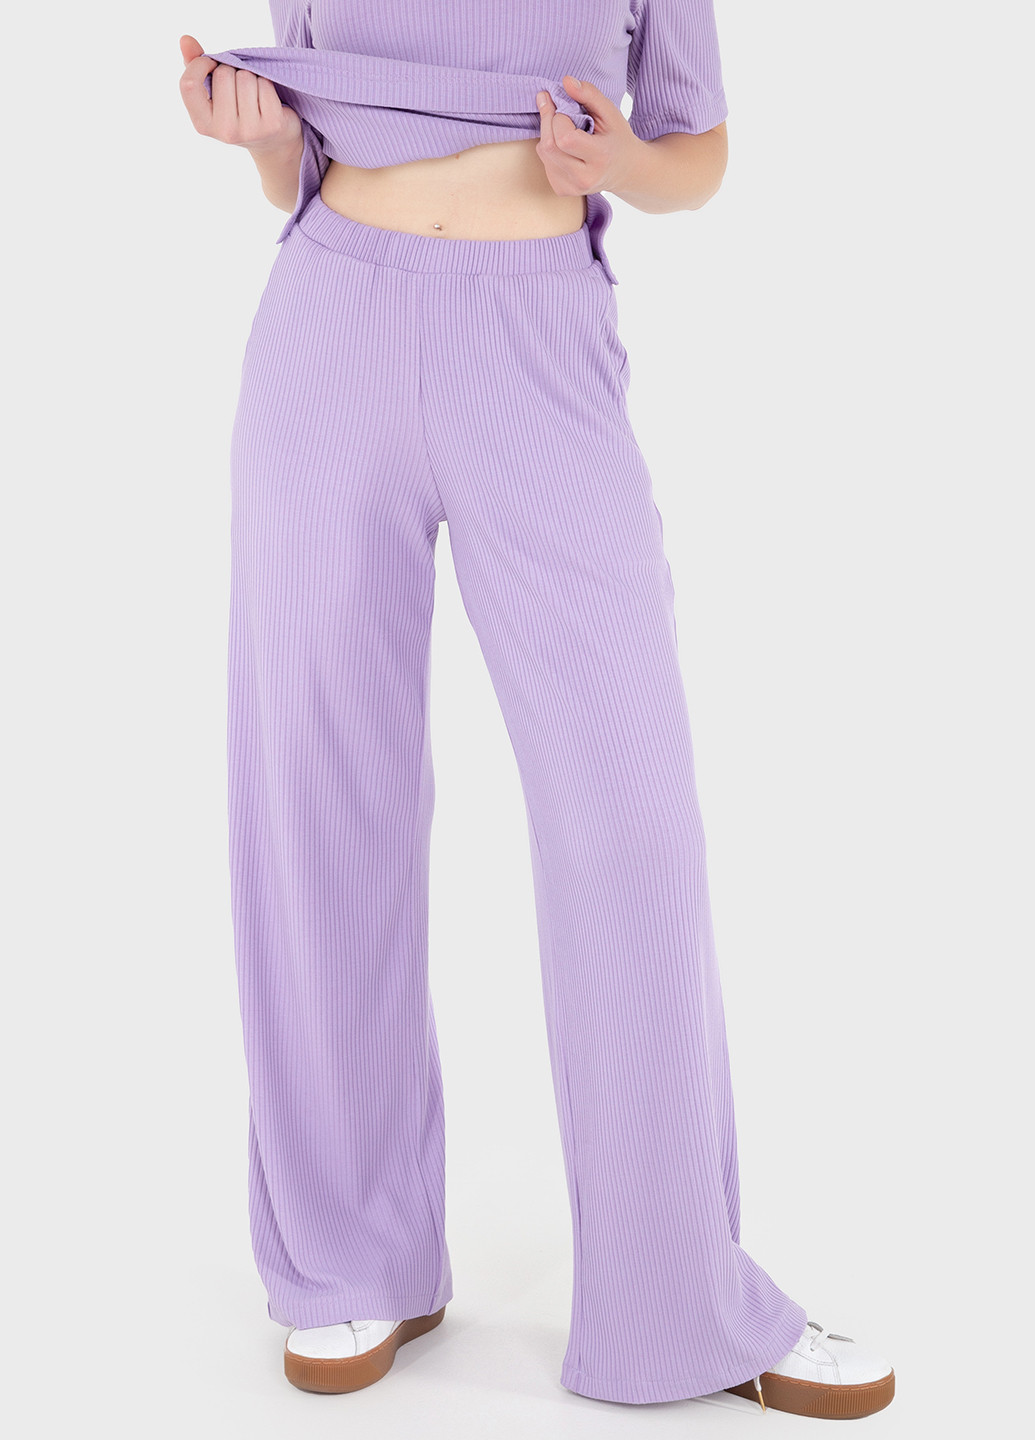 Жіночі штани кльош в рубчик бузкового кольору Амаранті 600000073 Merlini амаранти (257533433)